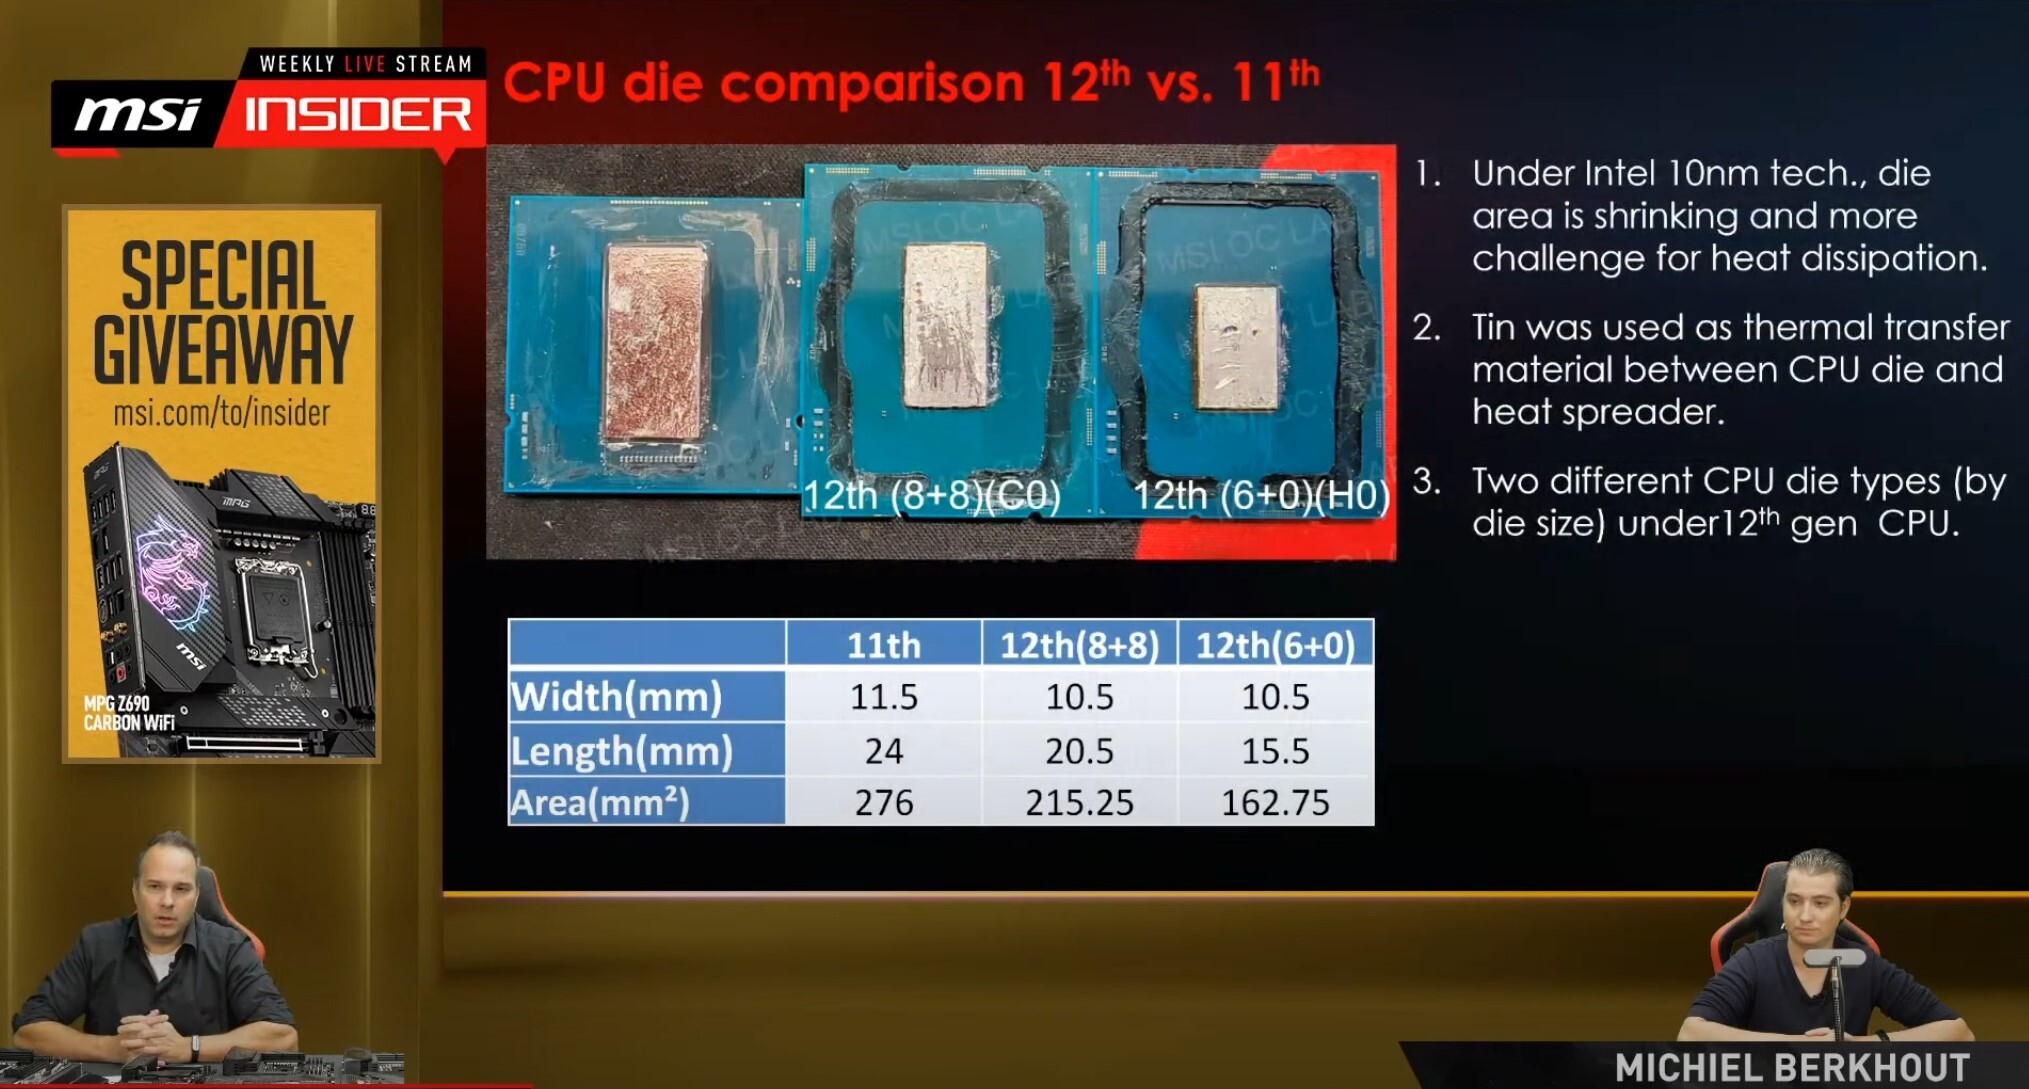 Intel's Alder Lake-S CPU pictured, Designed for Intel's Future